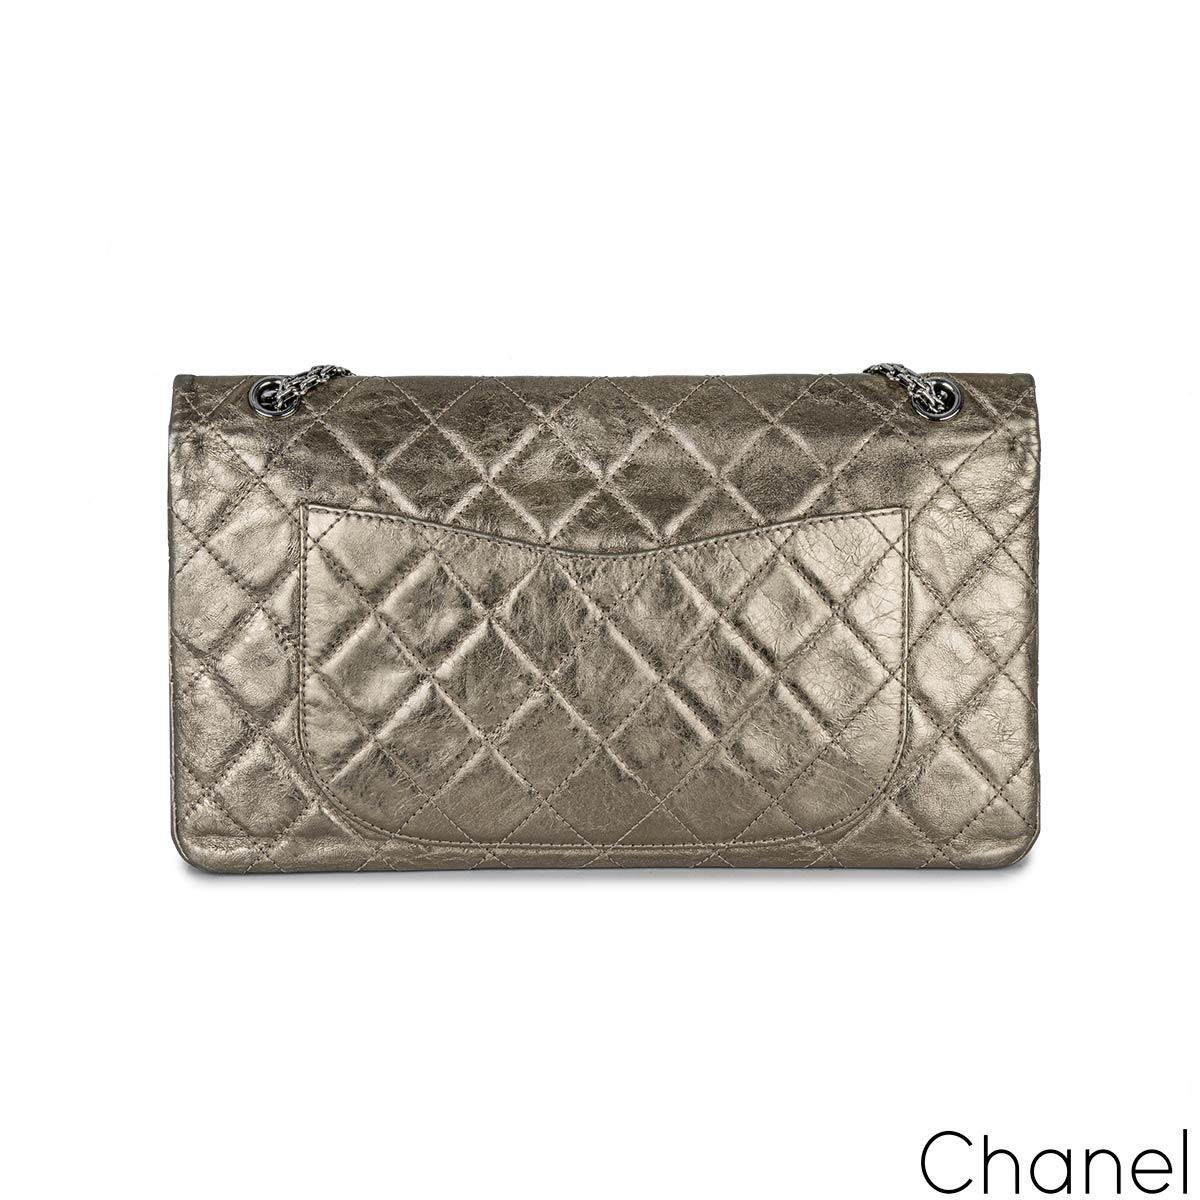 Un sac à main Chanel 2.55 Reissue Maxi à double rabat. L'extérieur de cette réédition 2.55 est fabriqué en cuir d'agneau champagne métallisé, avec des coutures en diamant et des accessoires en argent foncé. Il est doté d'un rabat avant, d'une